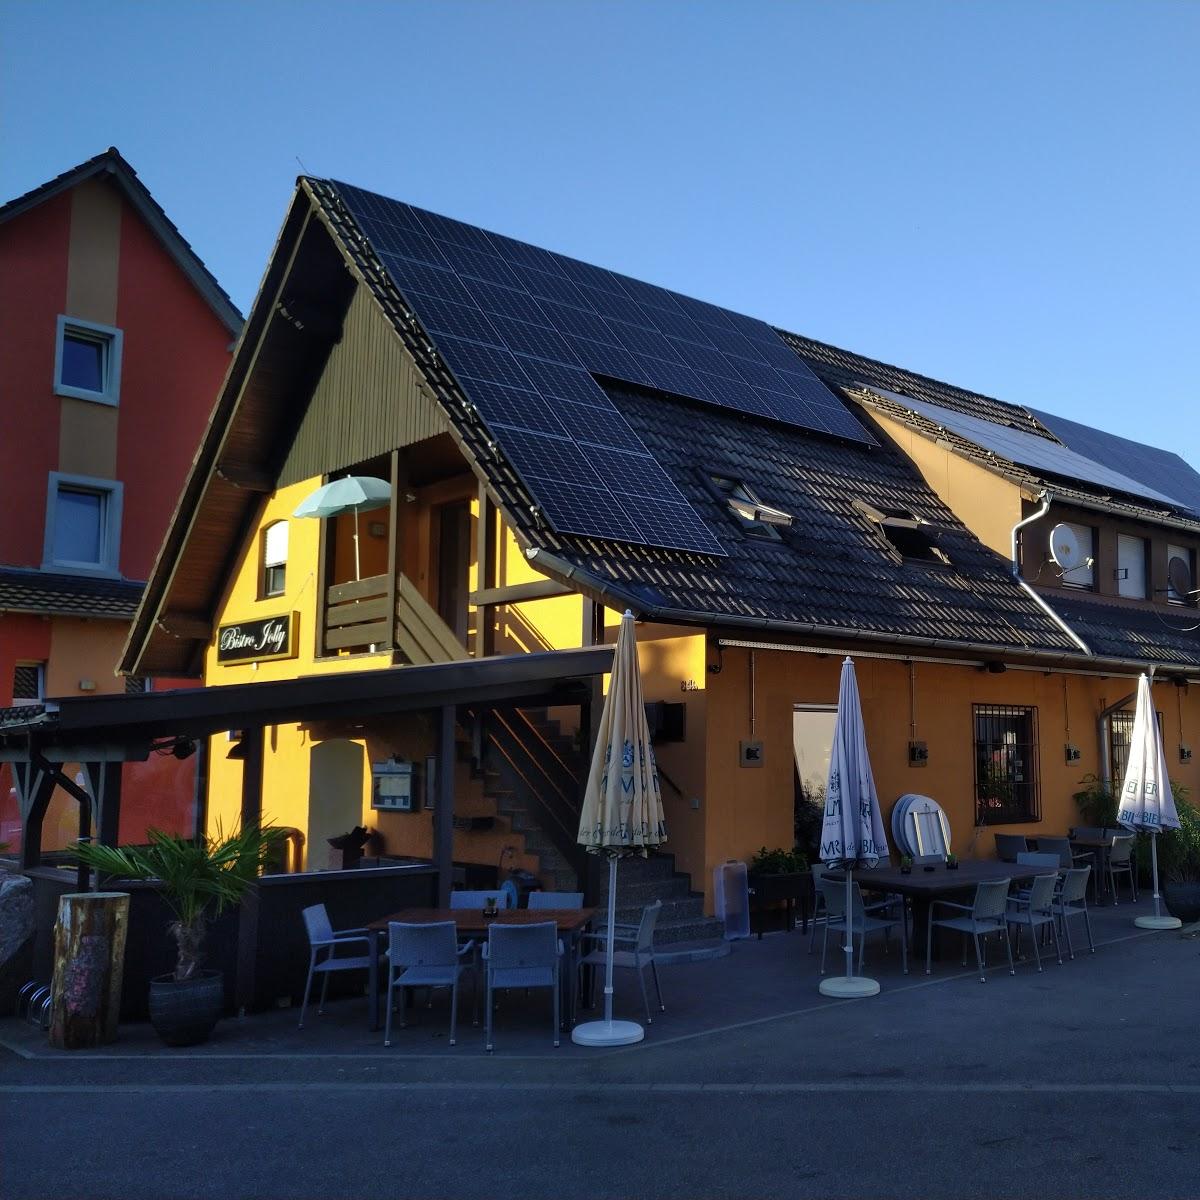 Restaurant "Bistro Jolly" in Oberkirch